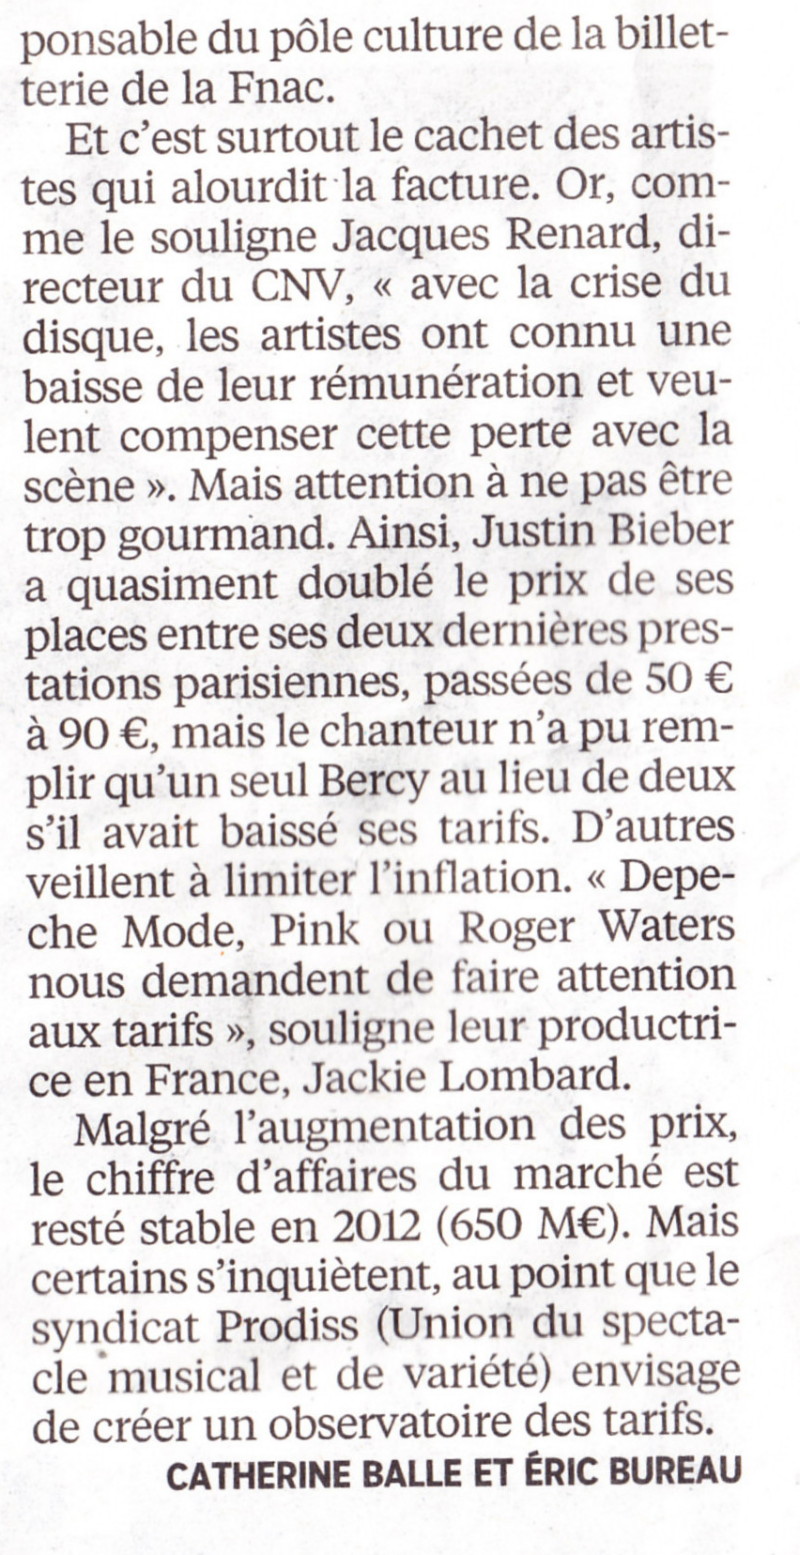 « Boycottons les concerts trop chers » ("Le Parisien", 14 septembre 2013) 13091404430516724011550560